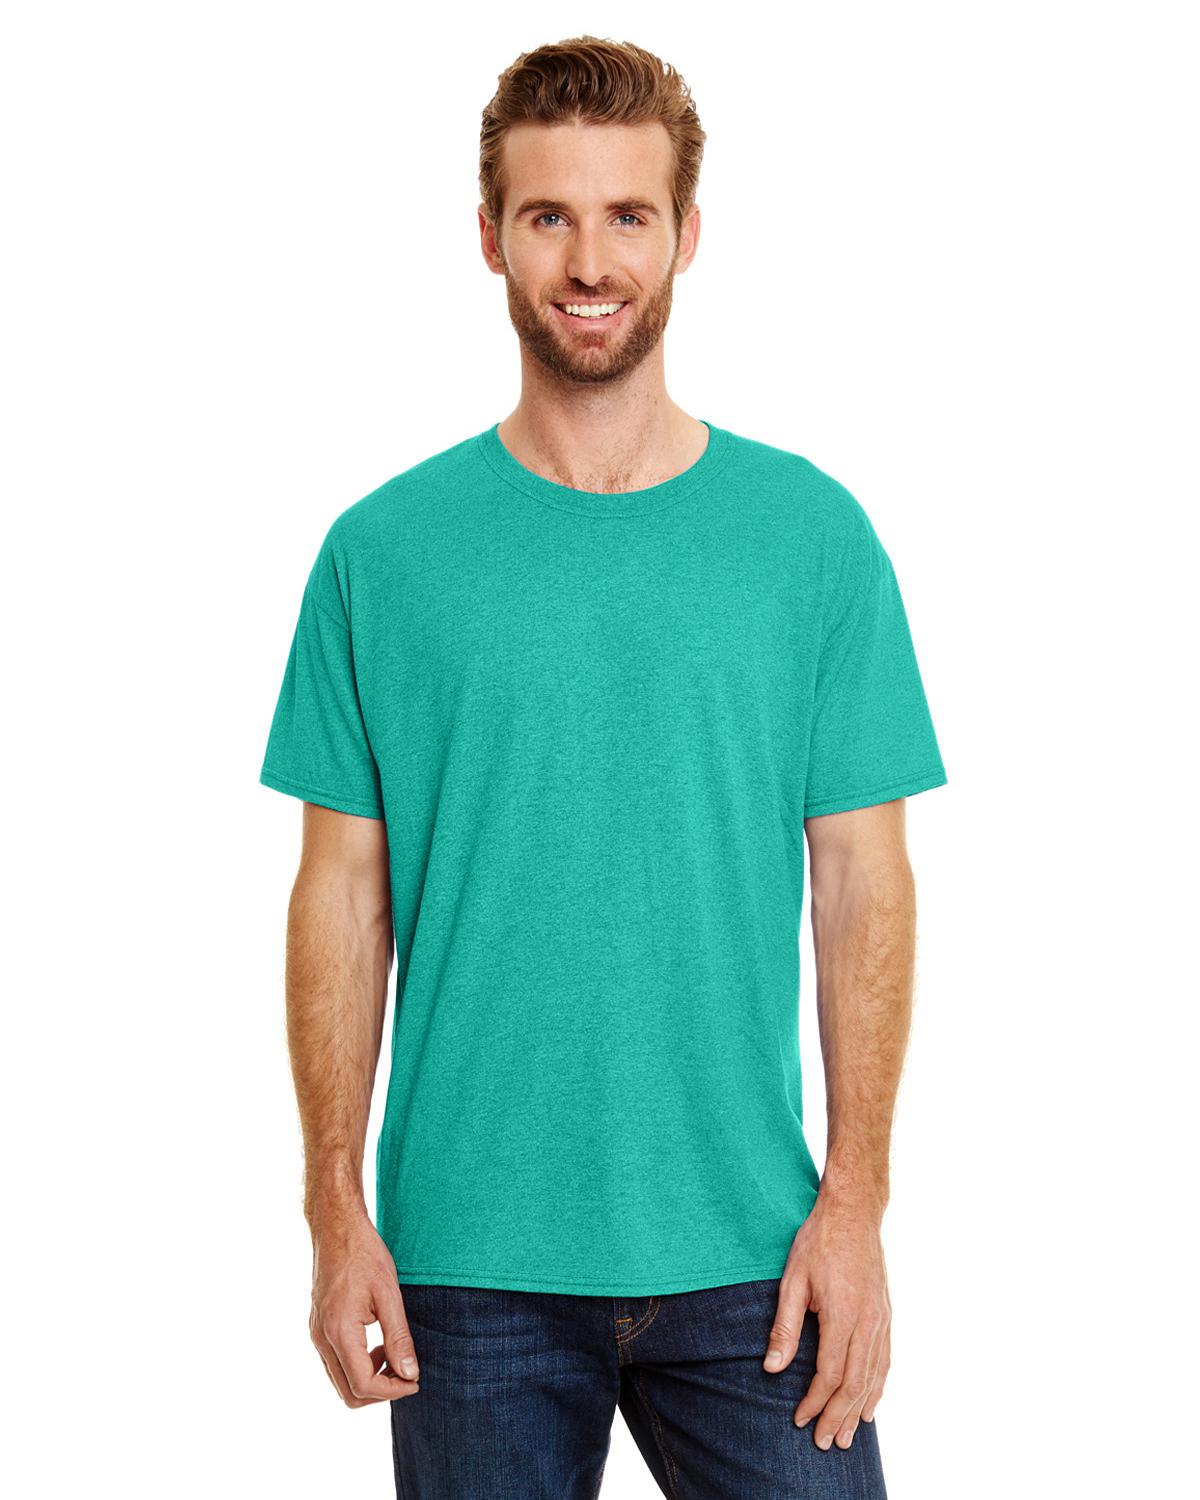 Hanes 42TB Adult X-Temp Triblend T-Shirt - Shirtmax